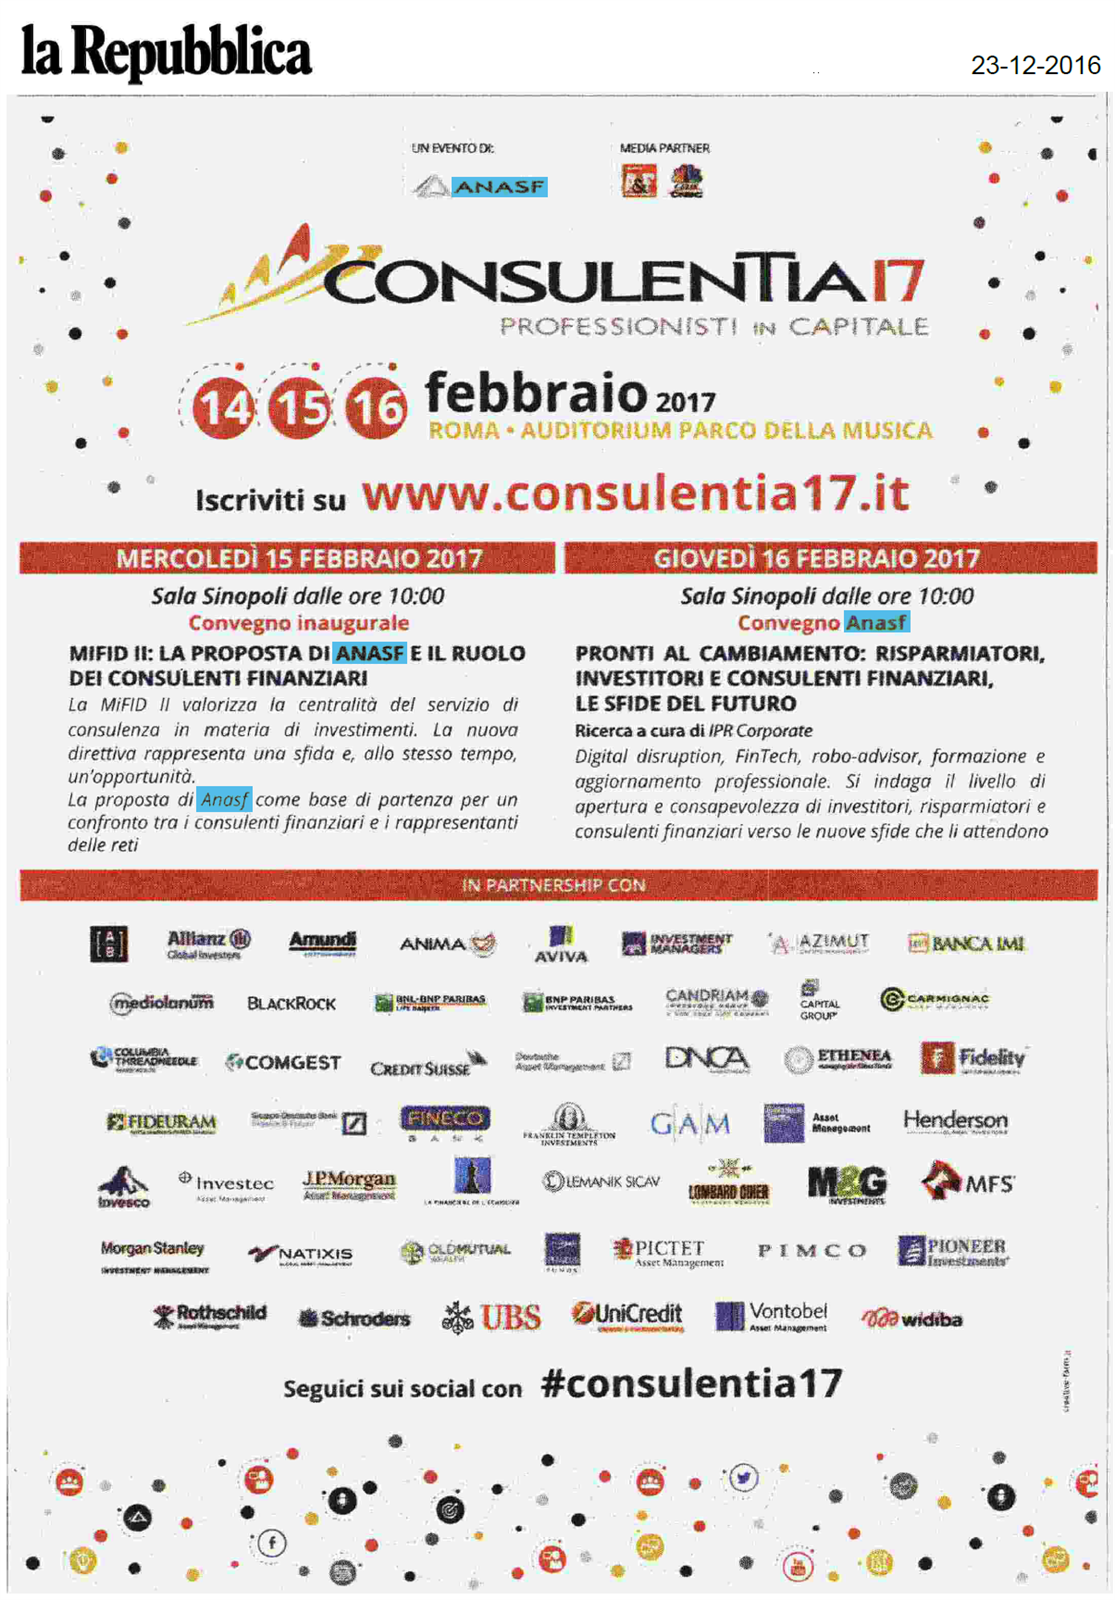 La pubblicità ConsulenTia17 Roma su La Repubblica